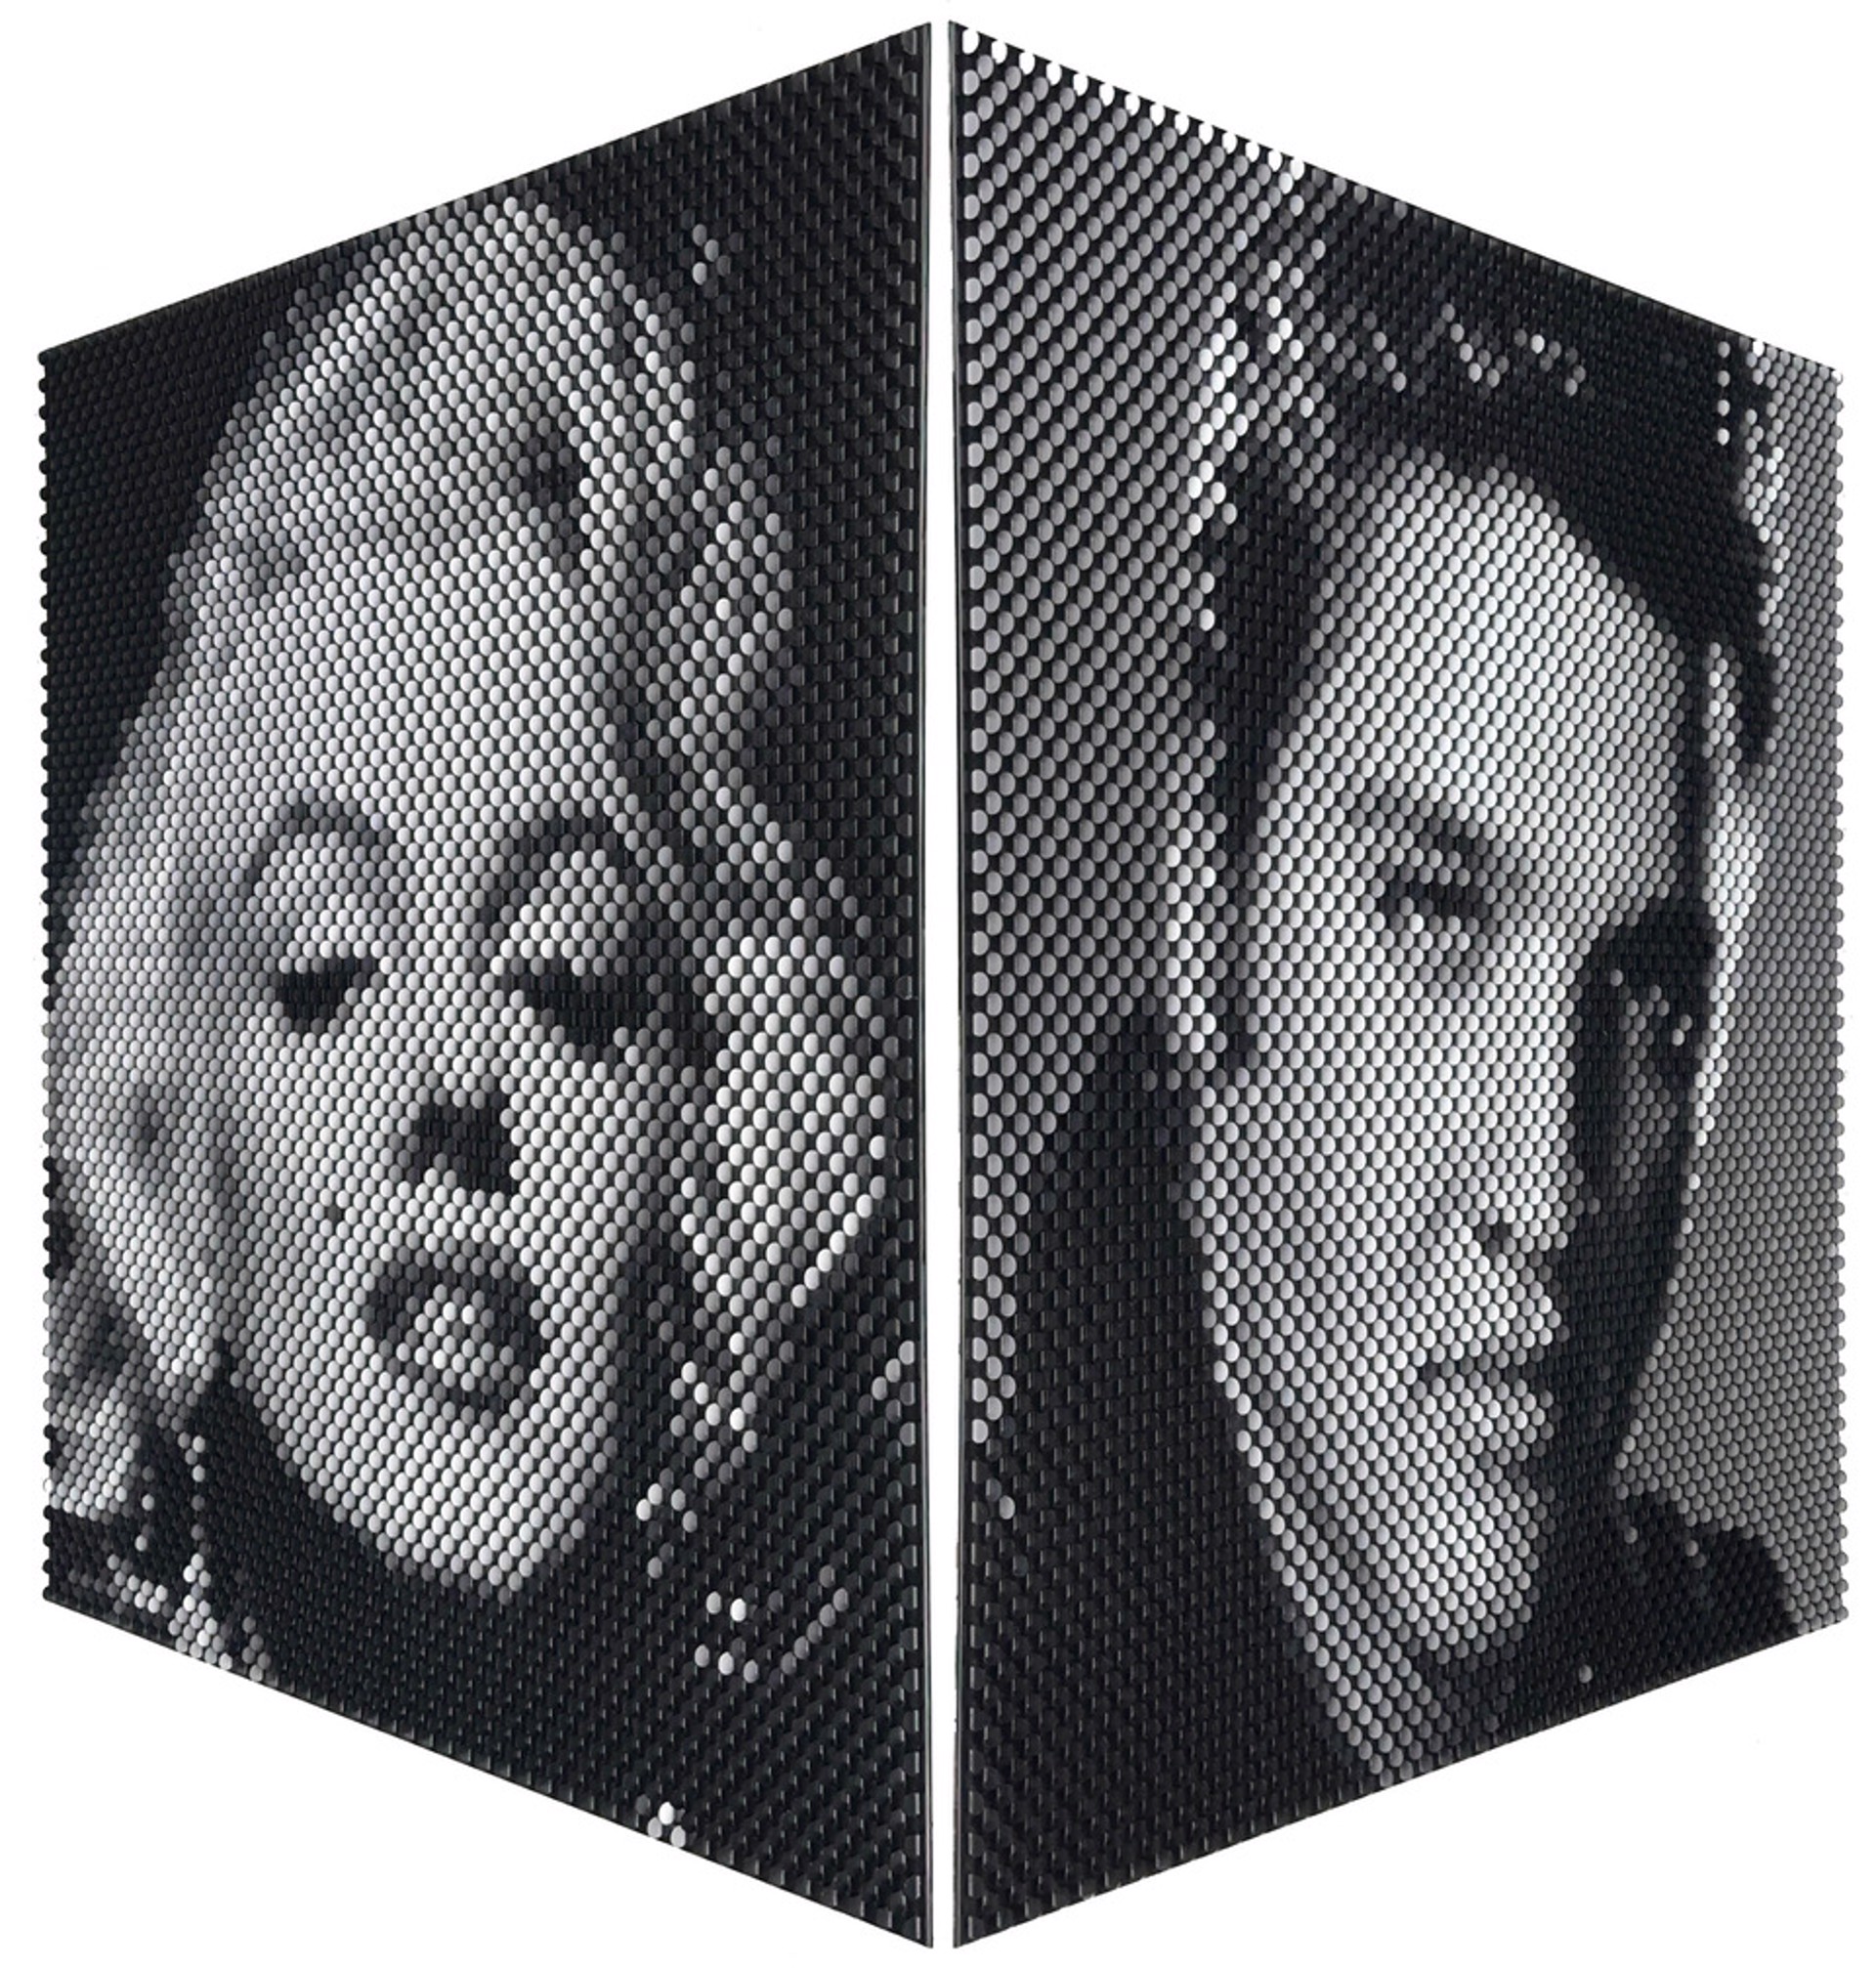 Marilyn / Elvis by Juro Kralik